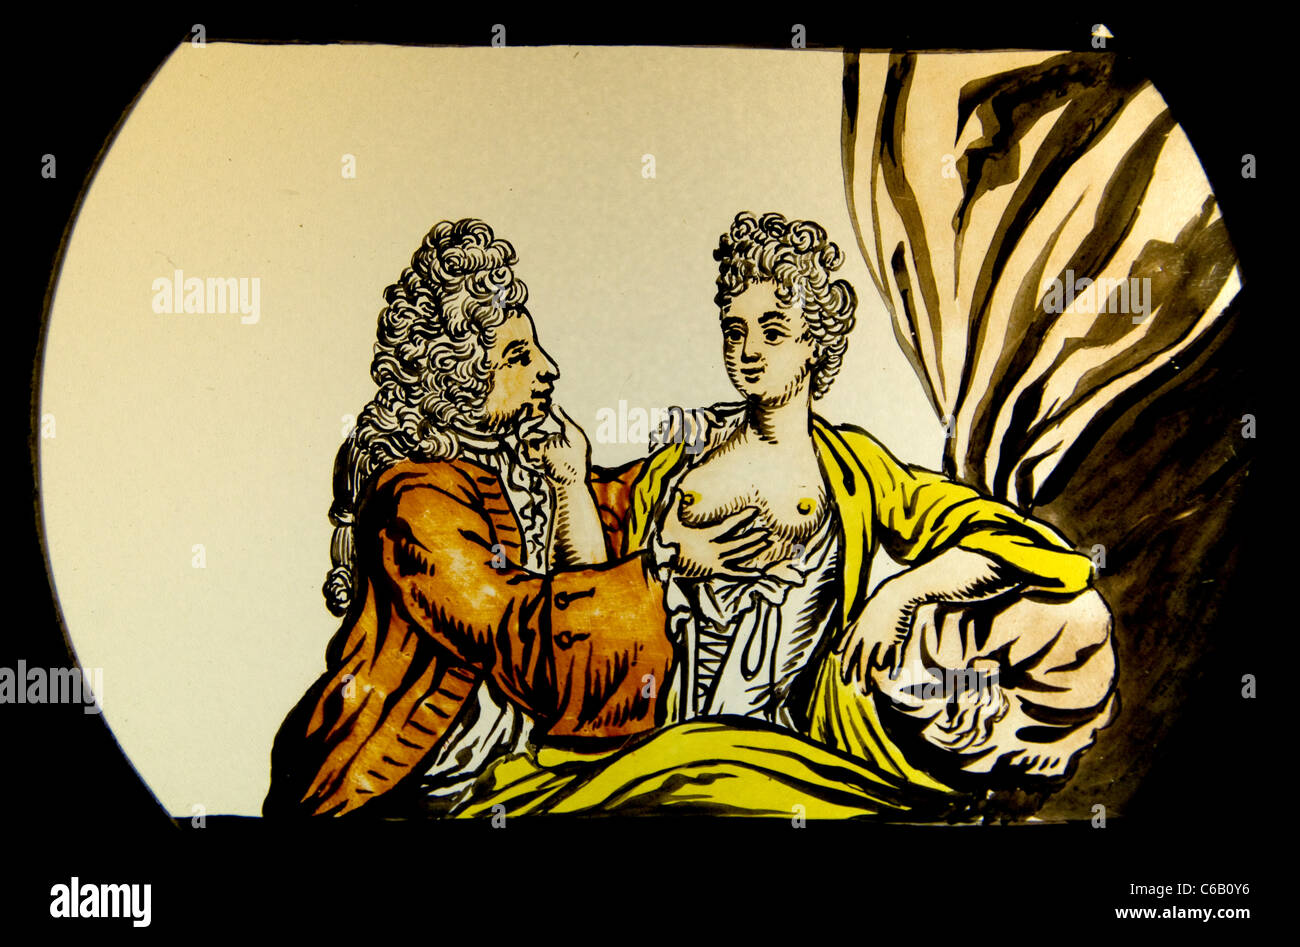 Laterna Magica lanterne magique au début de l'image type de projecteur d'image avancés Hollande Pays-Bas 17ème siècle Banque D'Images